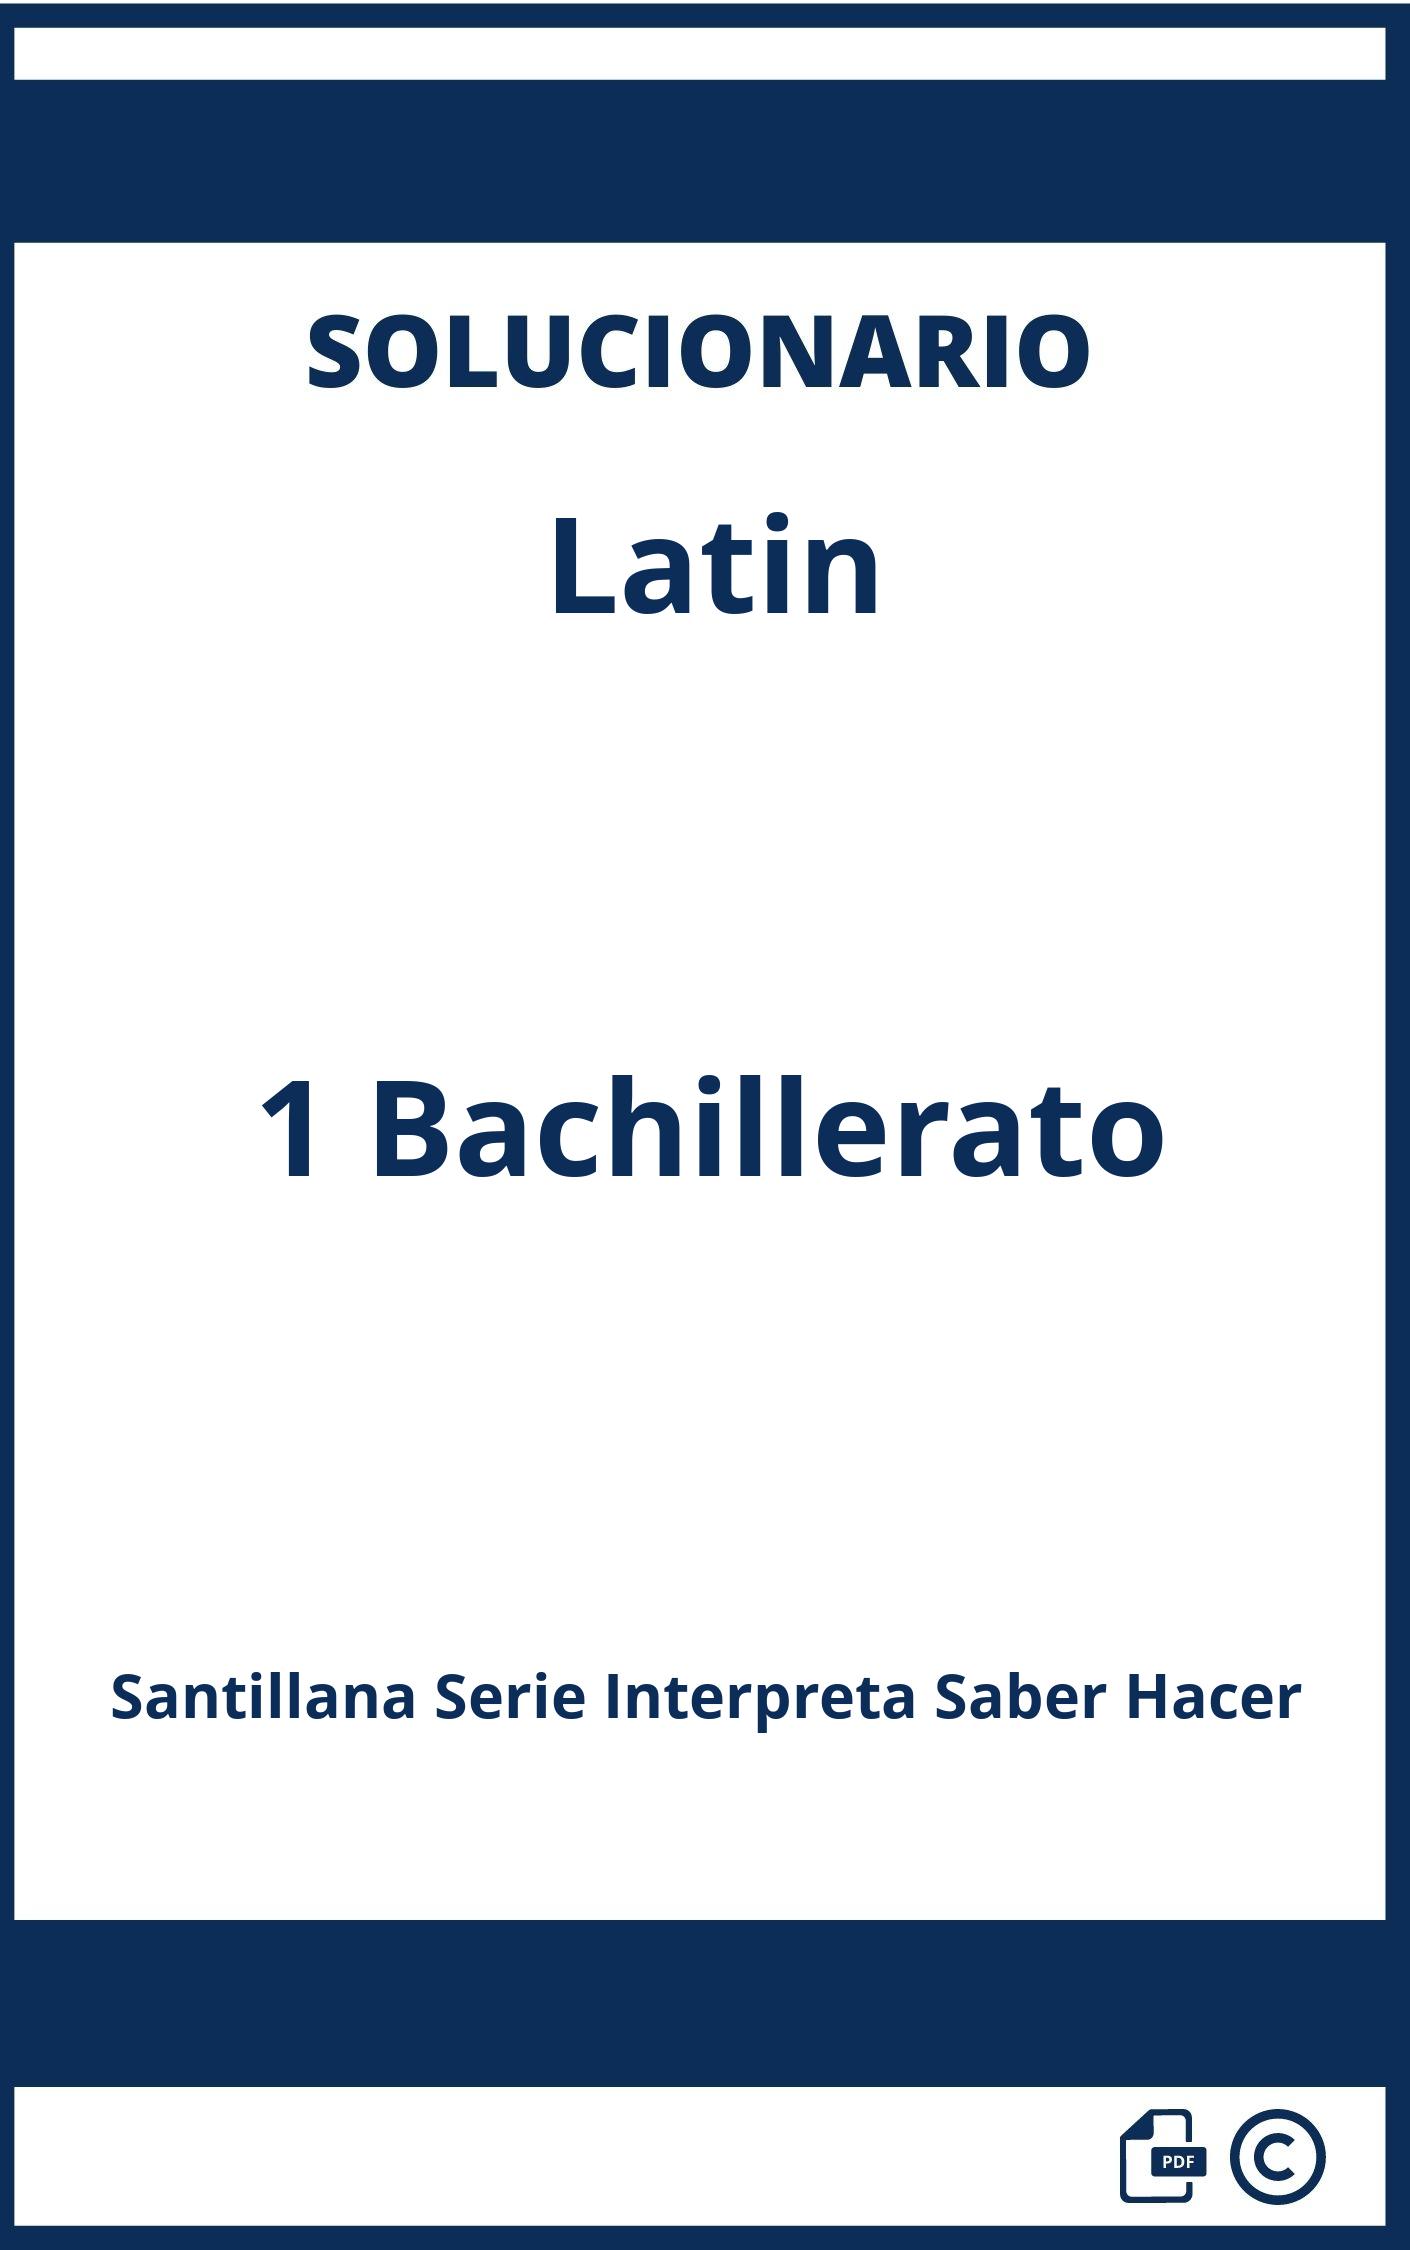 Solucionario Latin 1 Bachillerato Santillana Serie Interpreta Saber Hacer